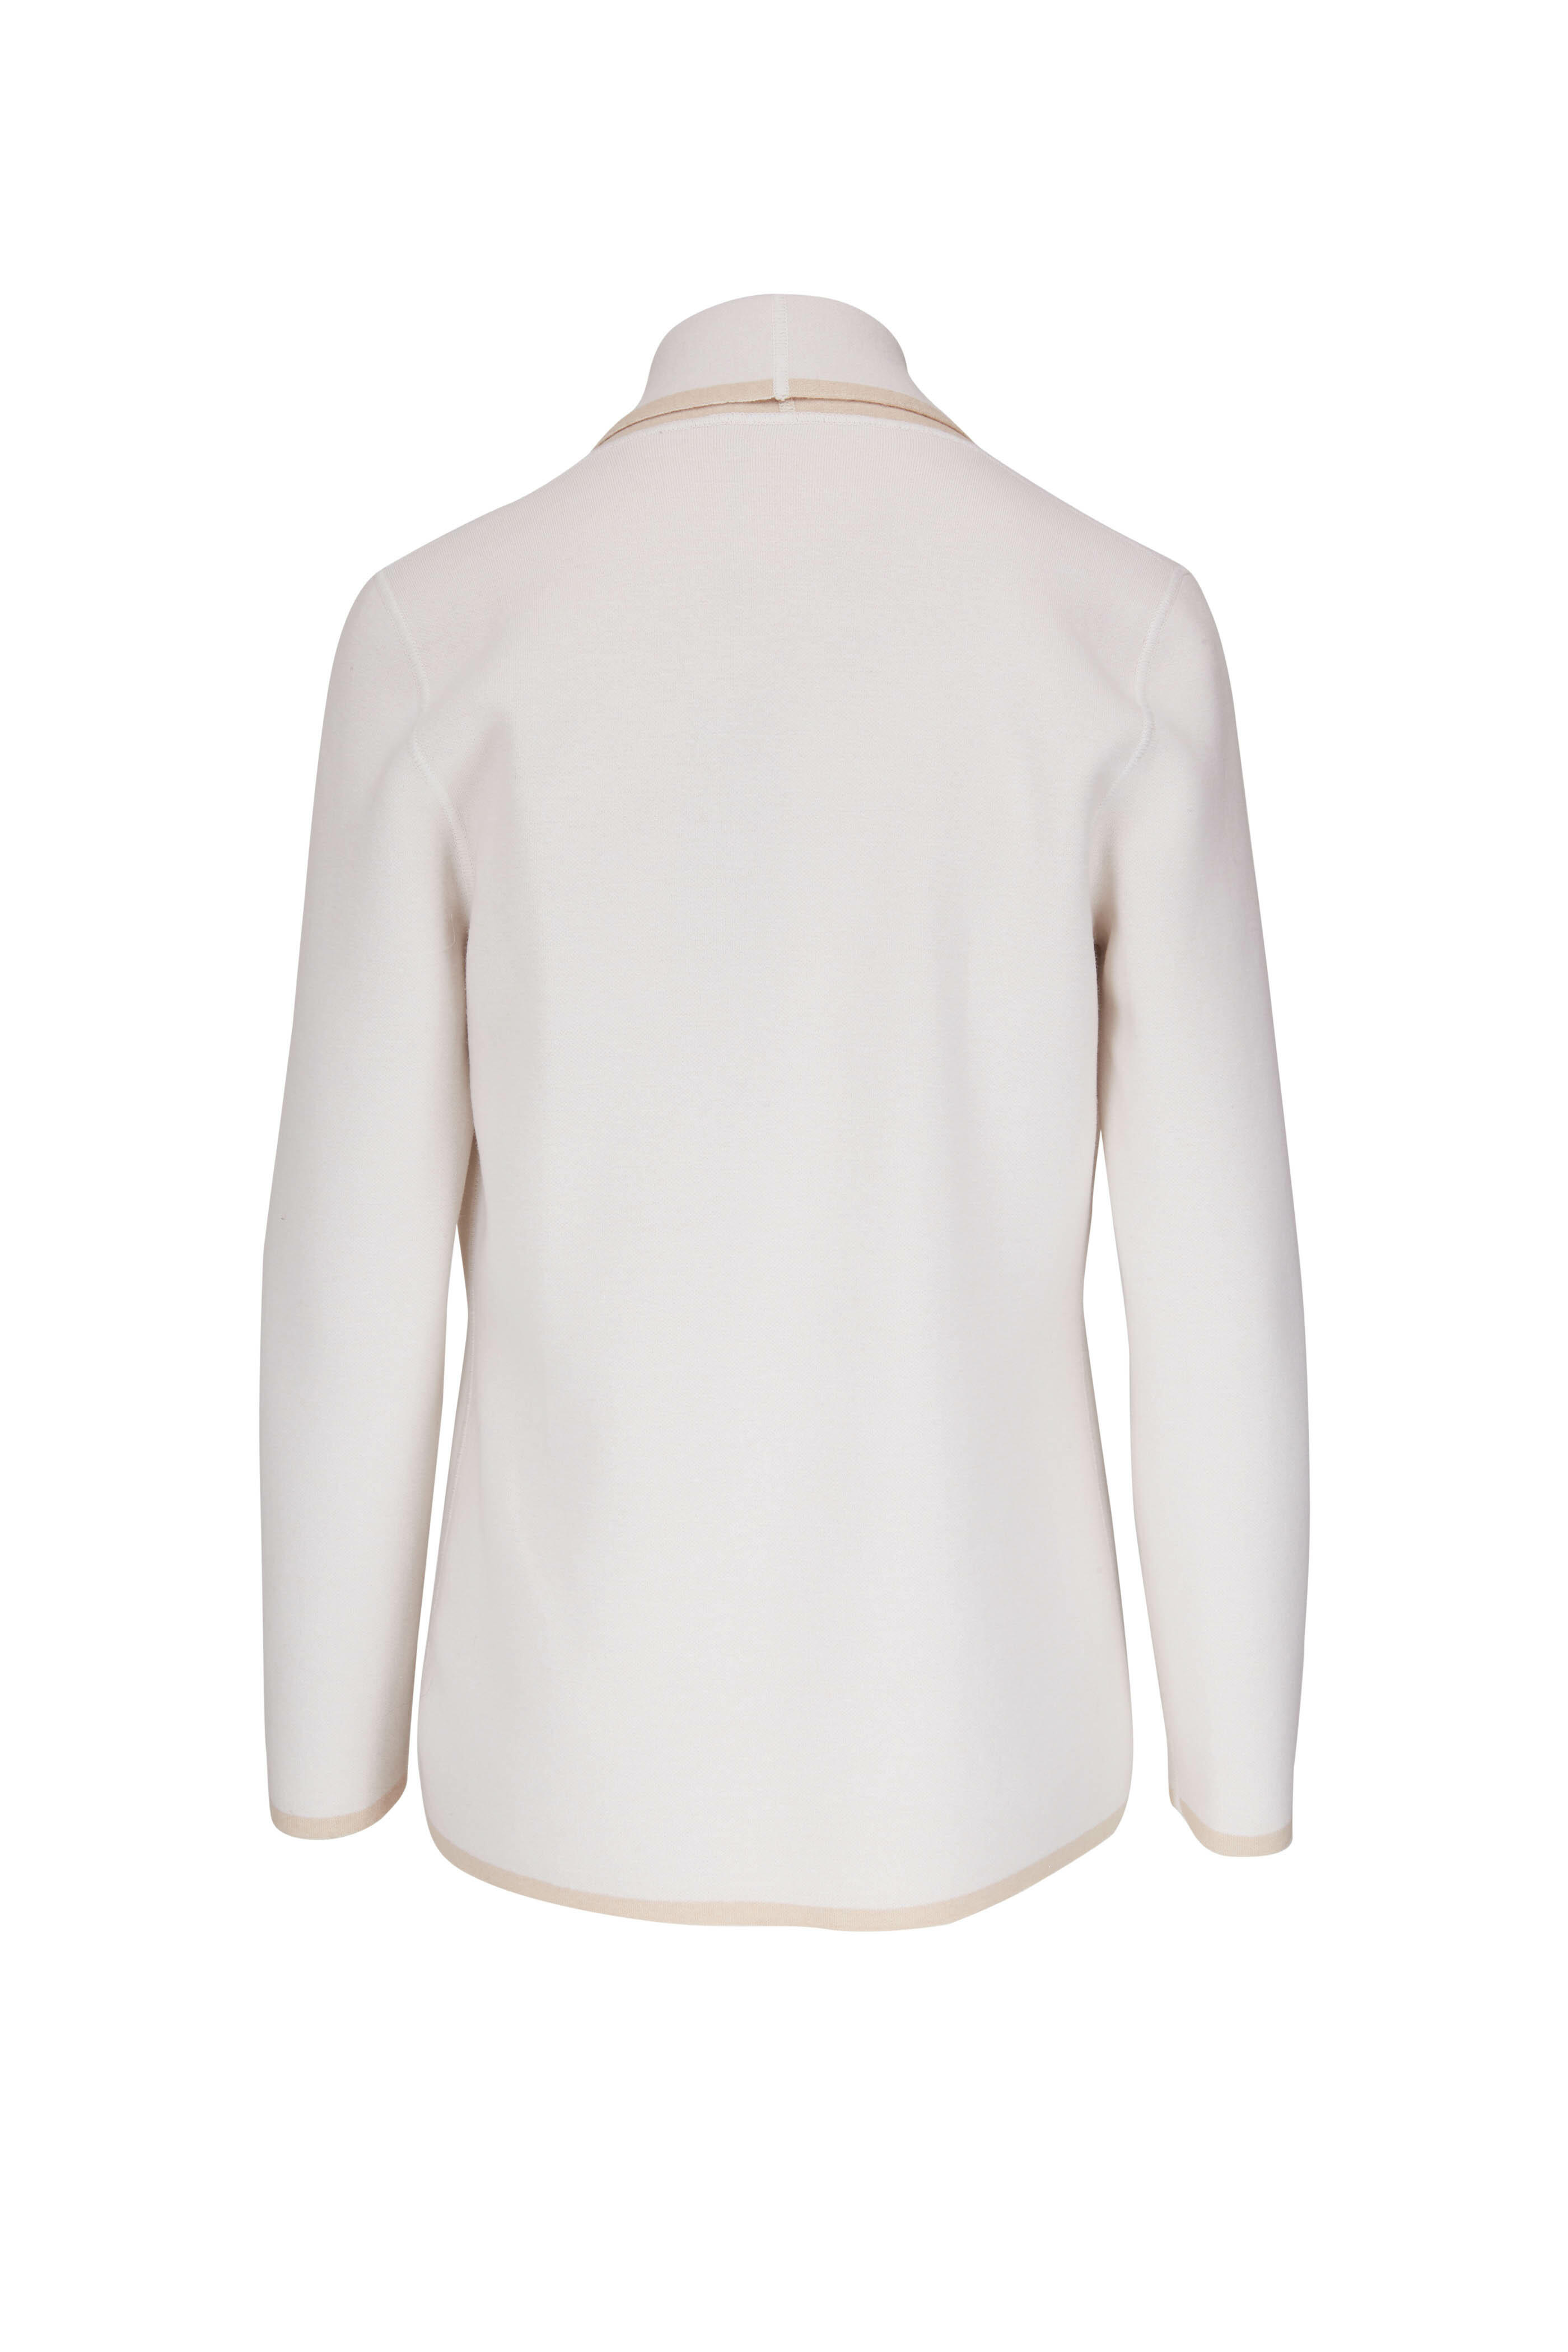 D.Exterior - Ivory & Khaki Jacket | Mitchell Stores